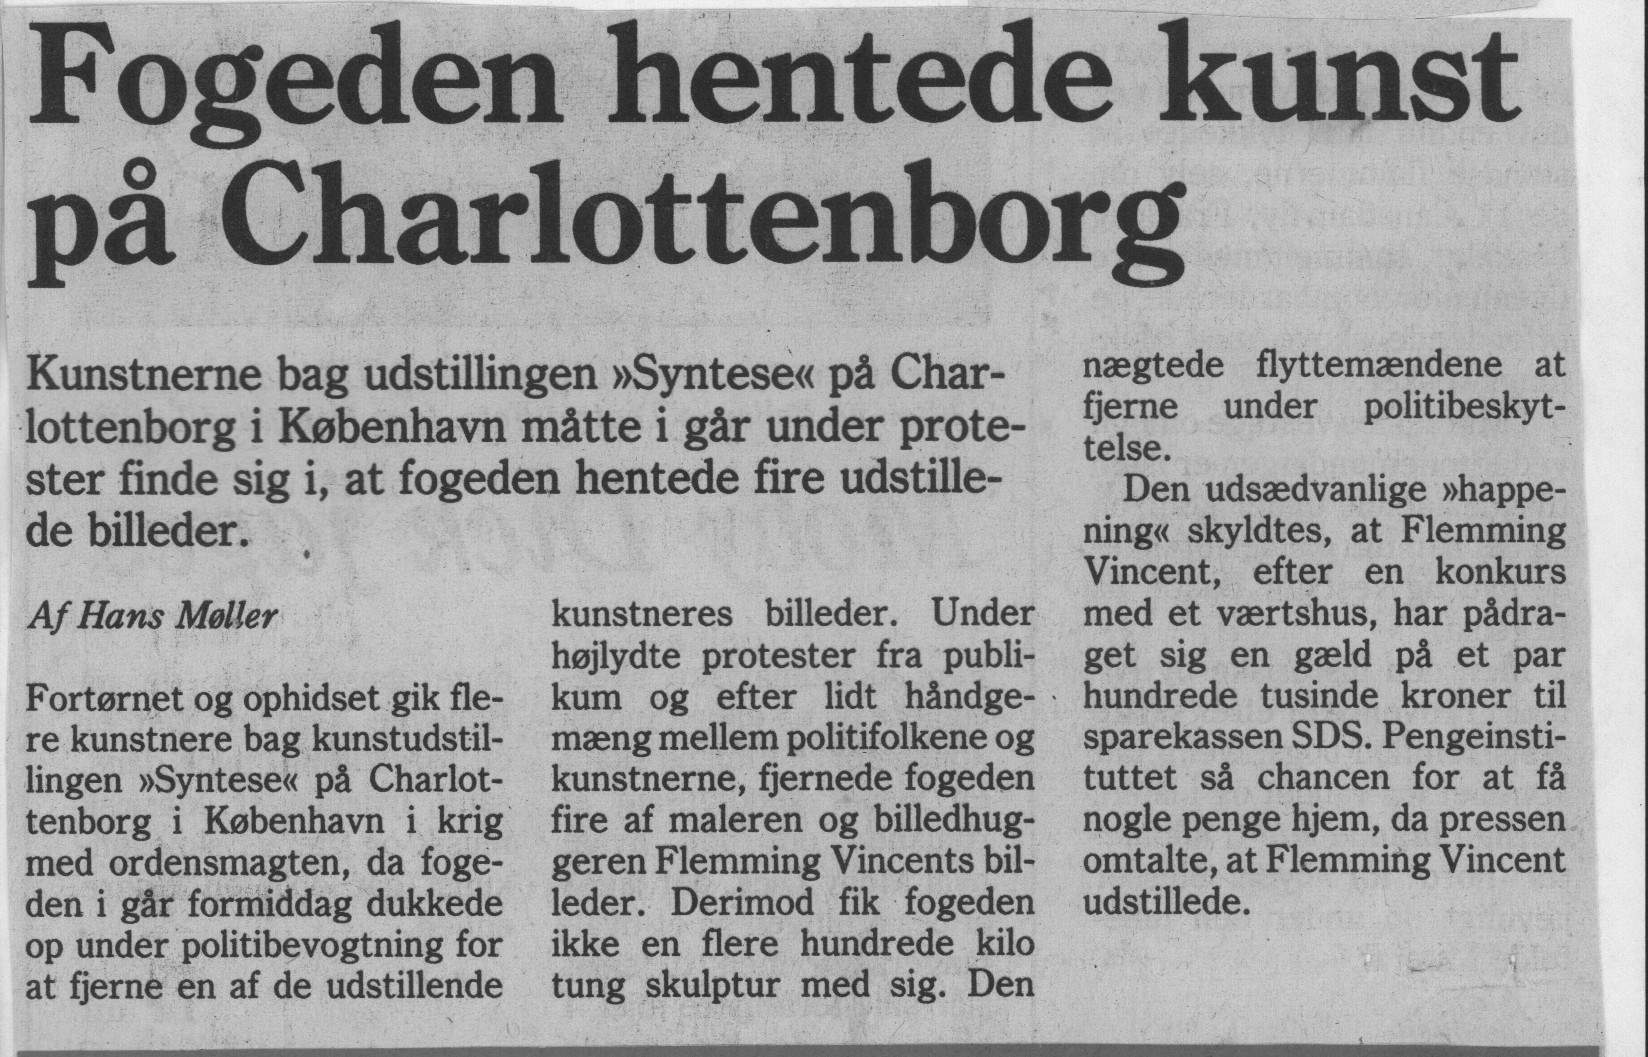 Fogeden hentede kunst på Charlottenborg. Omtale (Retsag. Den Lange rejse. Charlottenborg 1989, København). Medie ukendt. Primo august 1989.